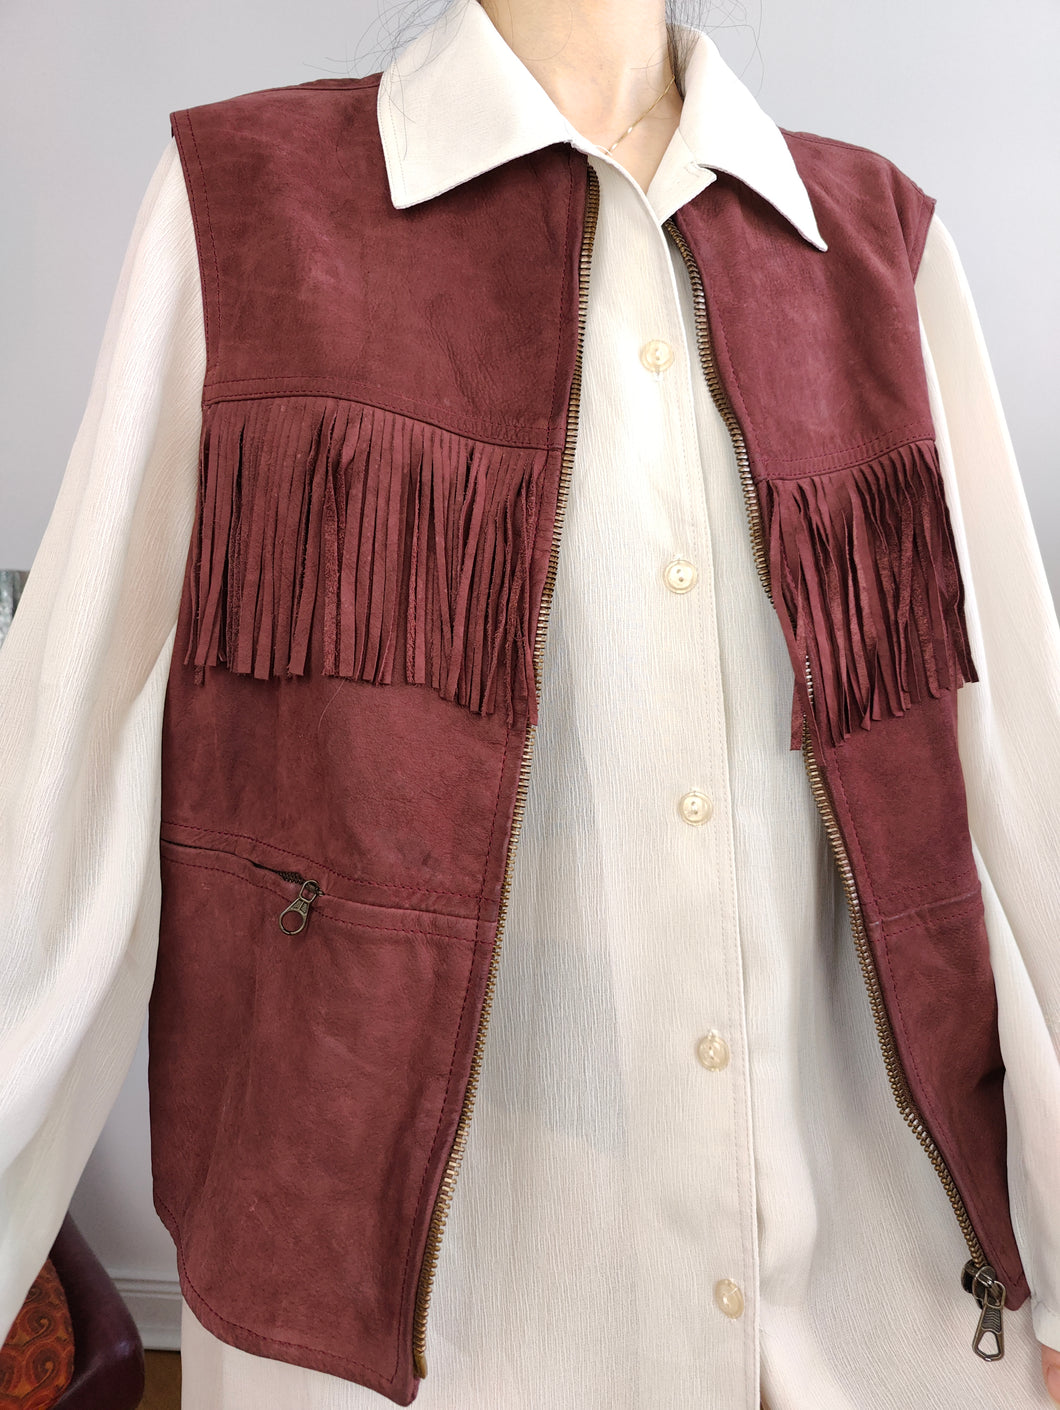 Vintage leather fringes sleeveless vest burgundy red suede waist coat jacket women 44 M-L